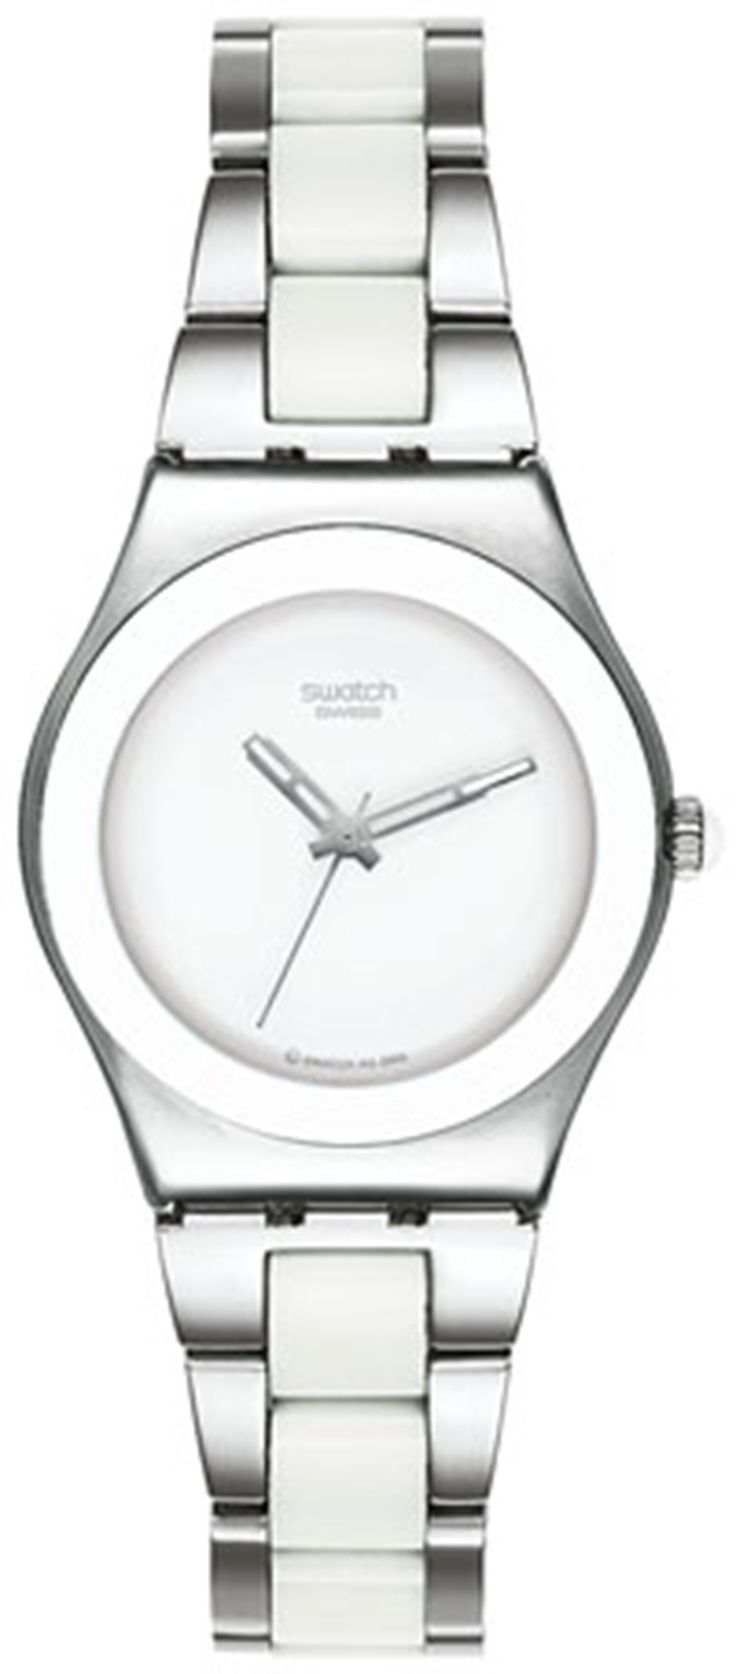 swatch tasarım sade gümüş saat modeli